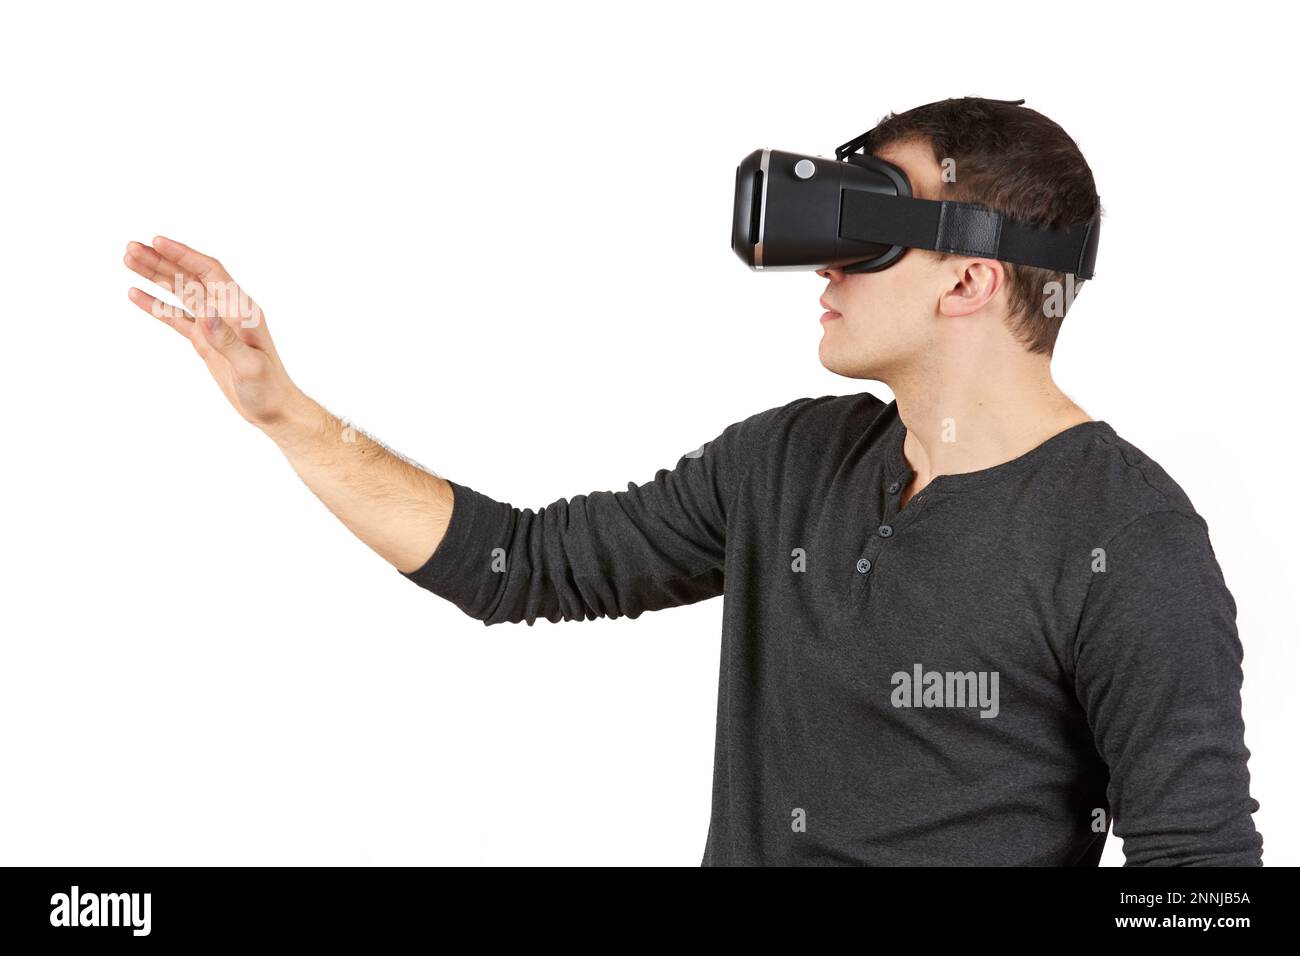 Un jeune homme avec un casque de réalité virtuelle sur sa tête tire sa main vers l'avant. La figure est isolée sur un fond blanc. Banque D'Images